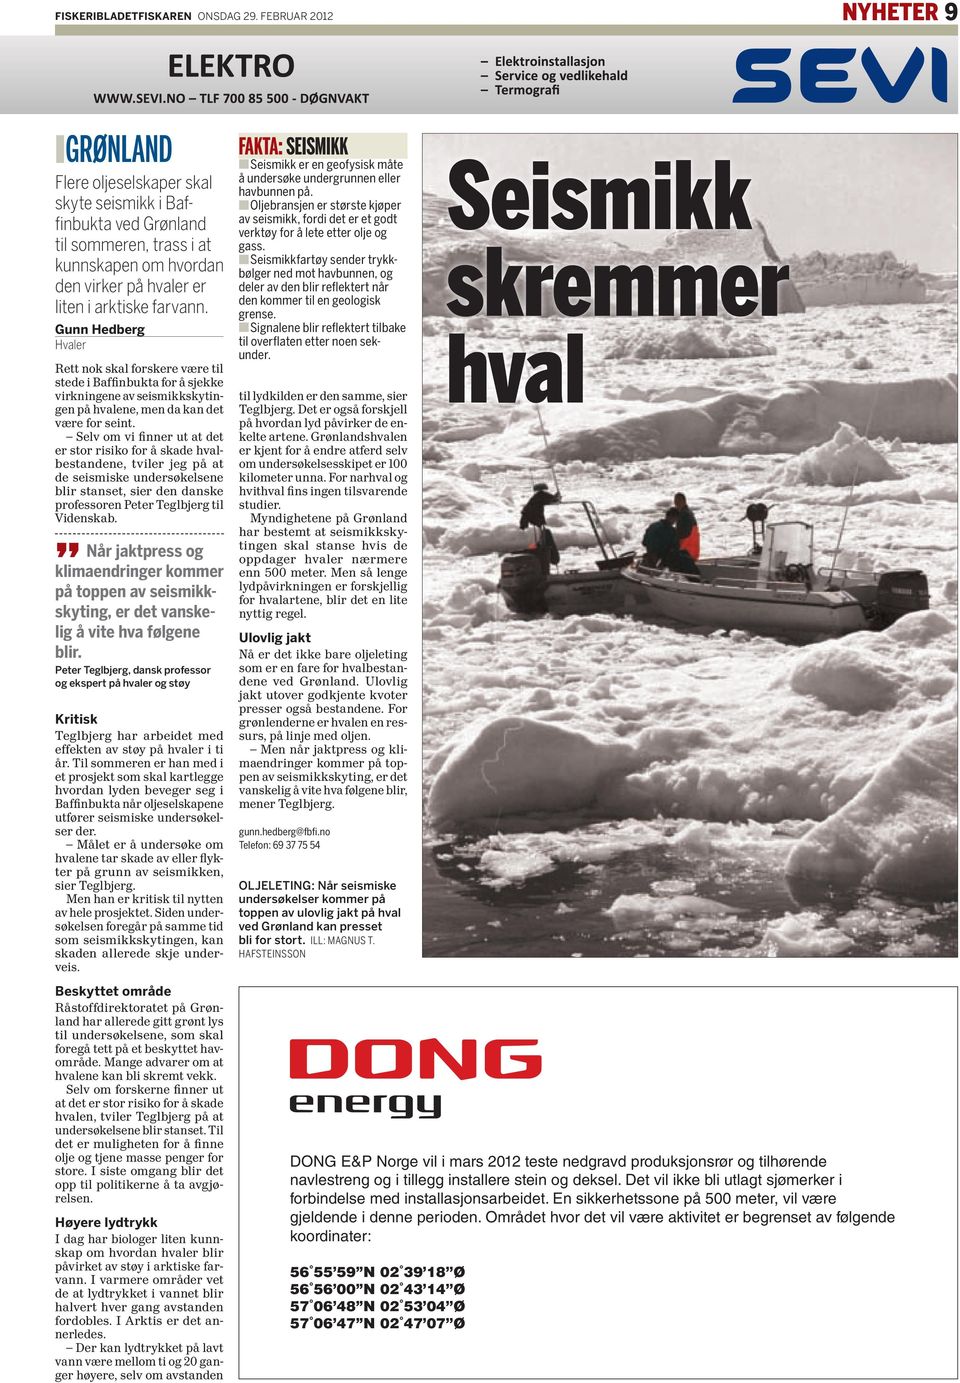 Gunn Hedberg Hvaler Rett nok skal forskere være til stede i Baffinbukta for å sjekke virkningene av seismikkskytingen på hvalene, men da kan det være for seint.